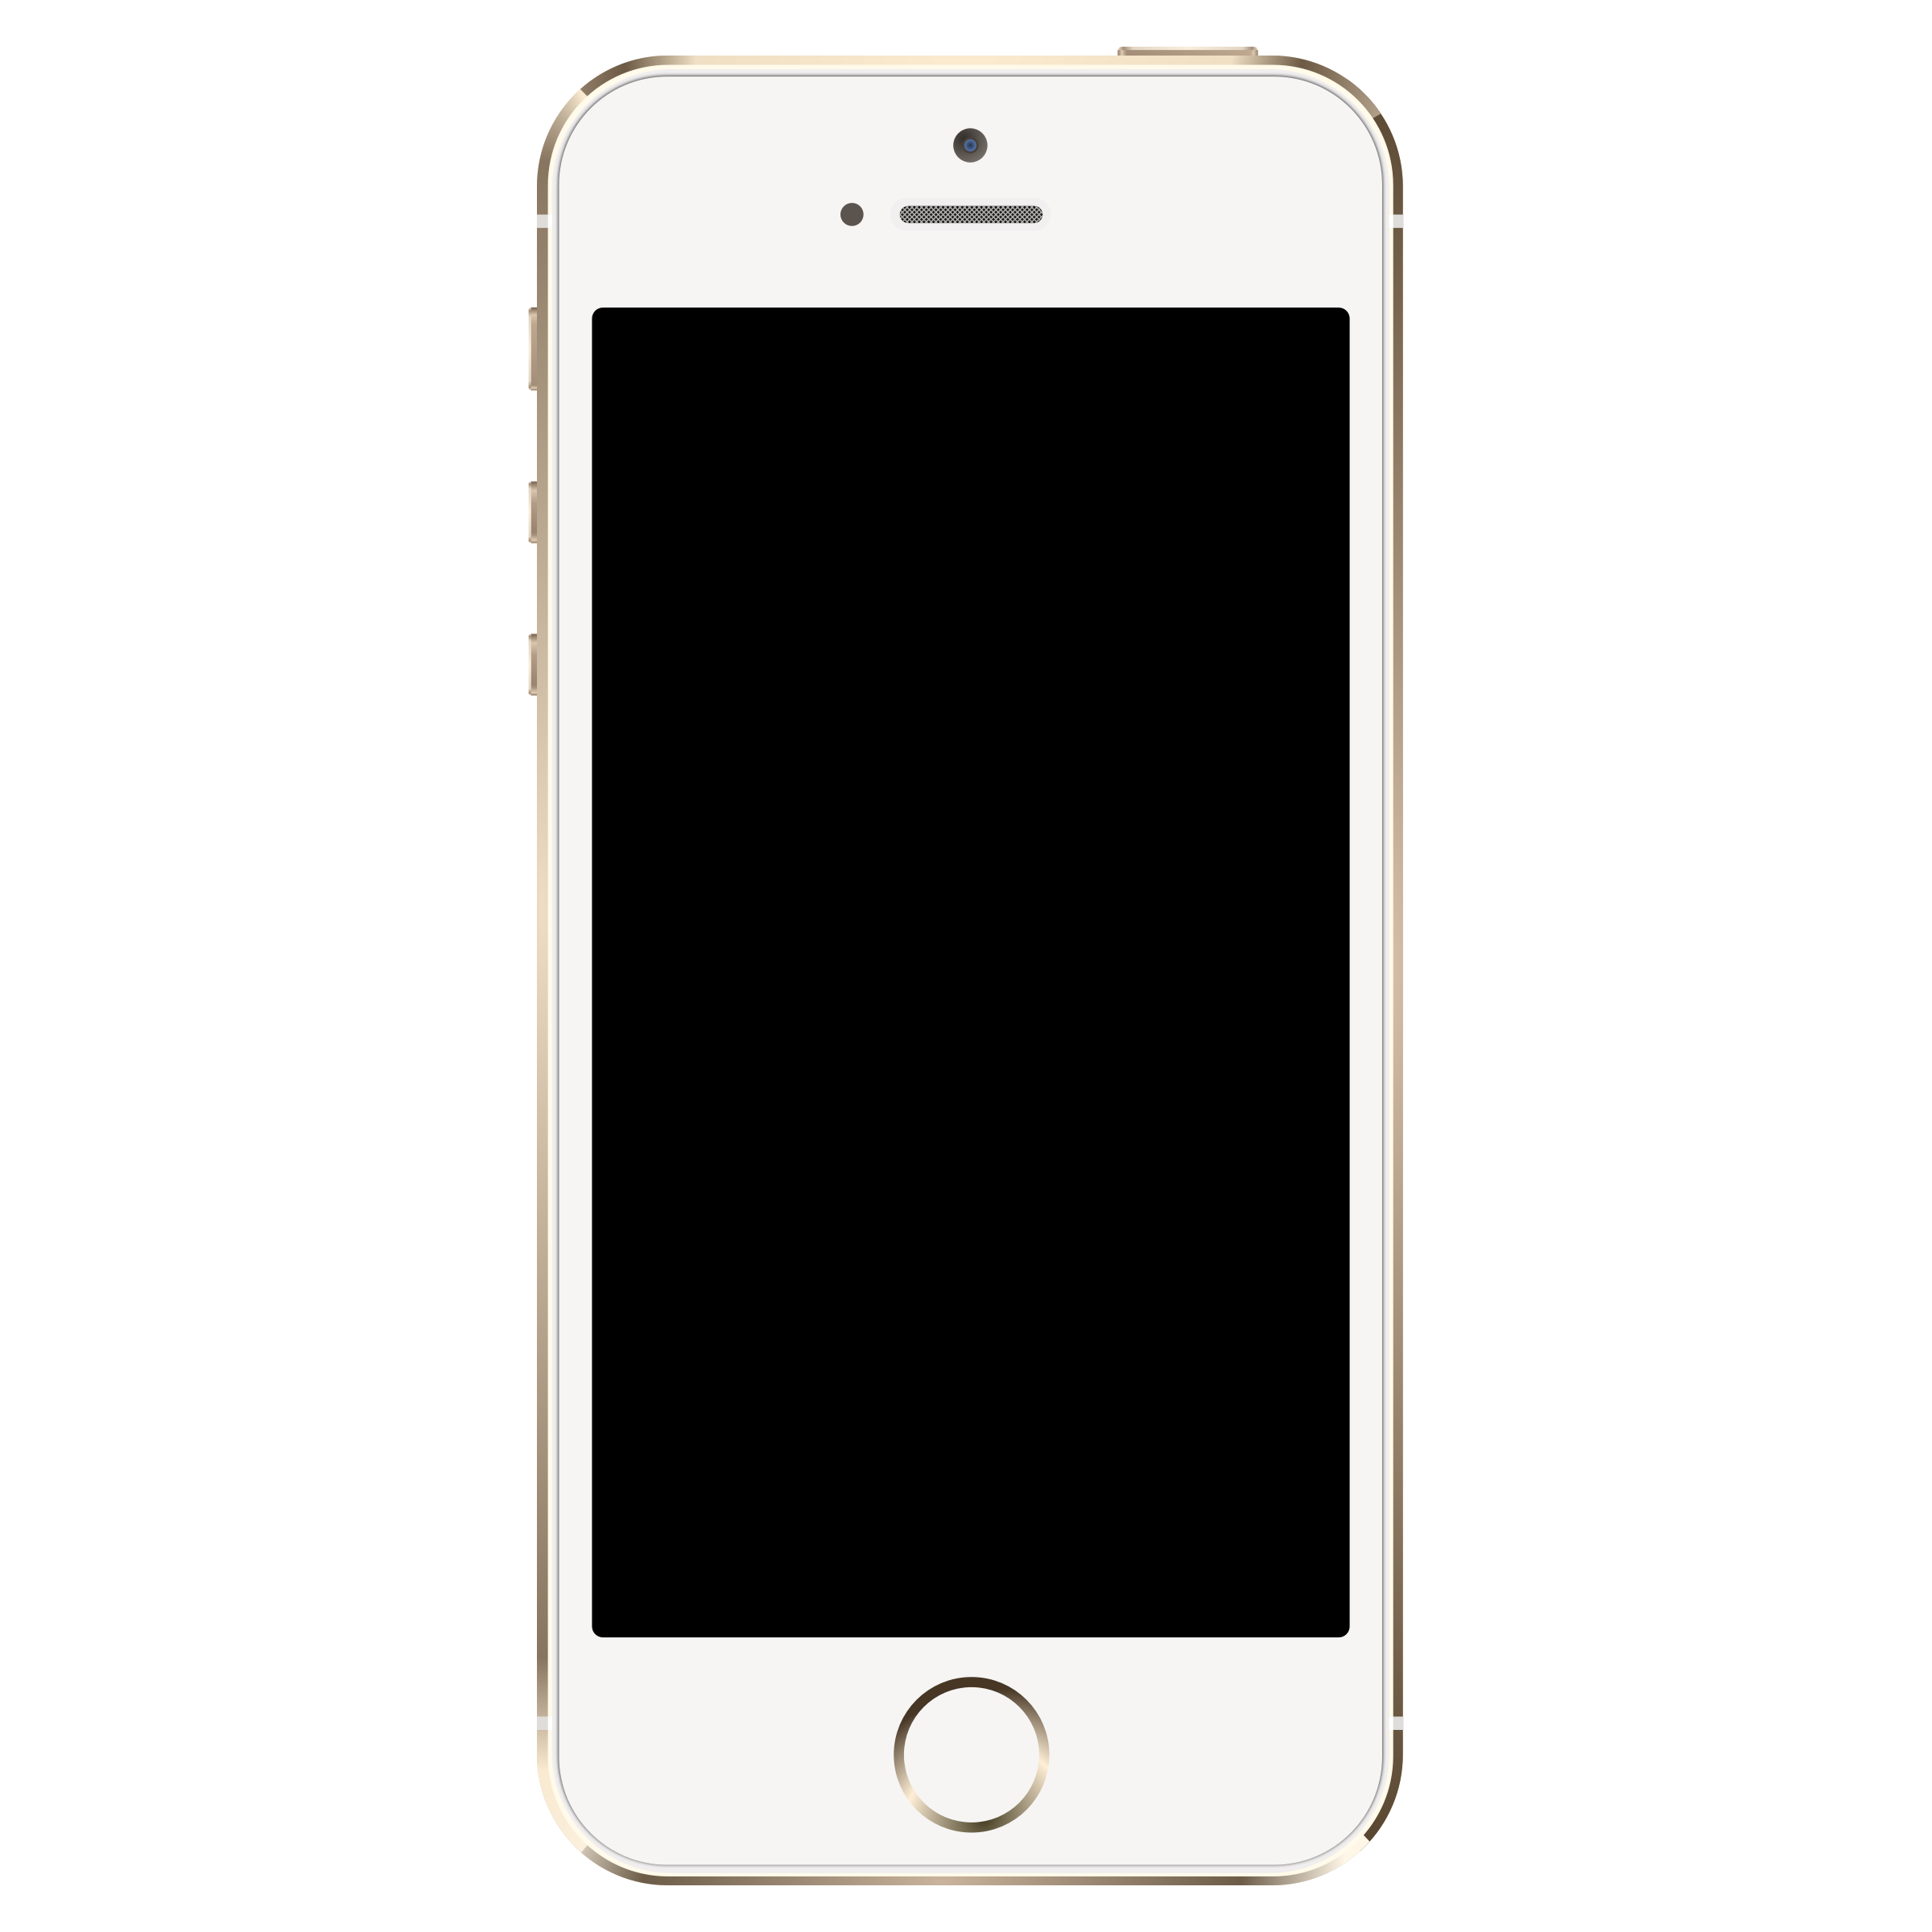 Iphone 5 Black Clipart I2clip